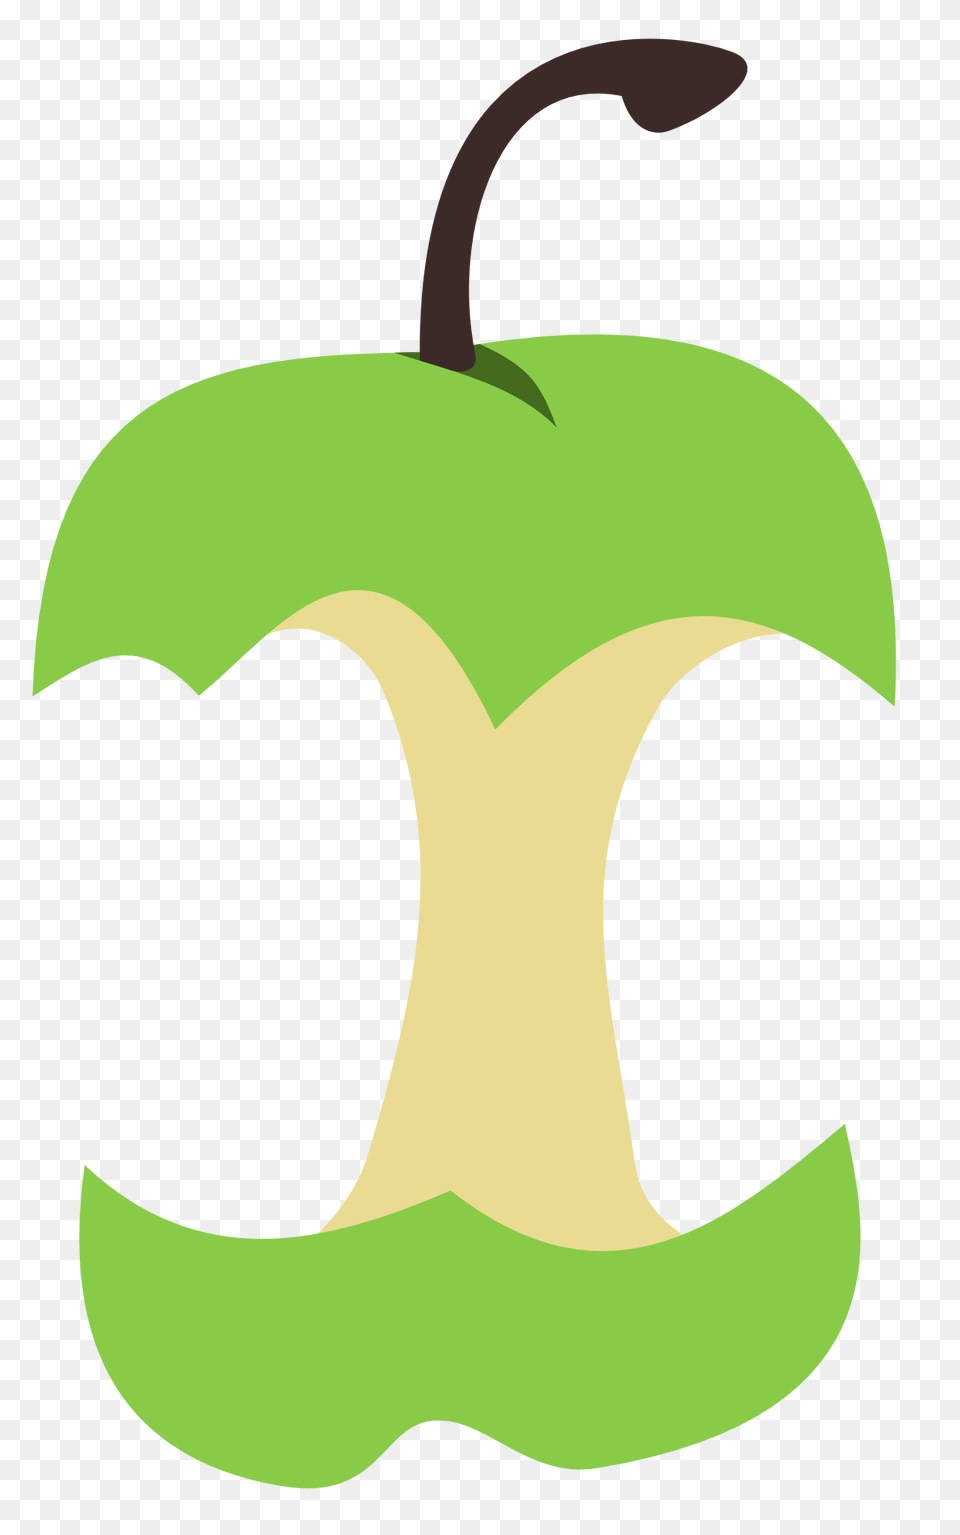 Apple Core Cutie Mark, Logo, Food, Fruit, Produce Png